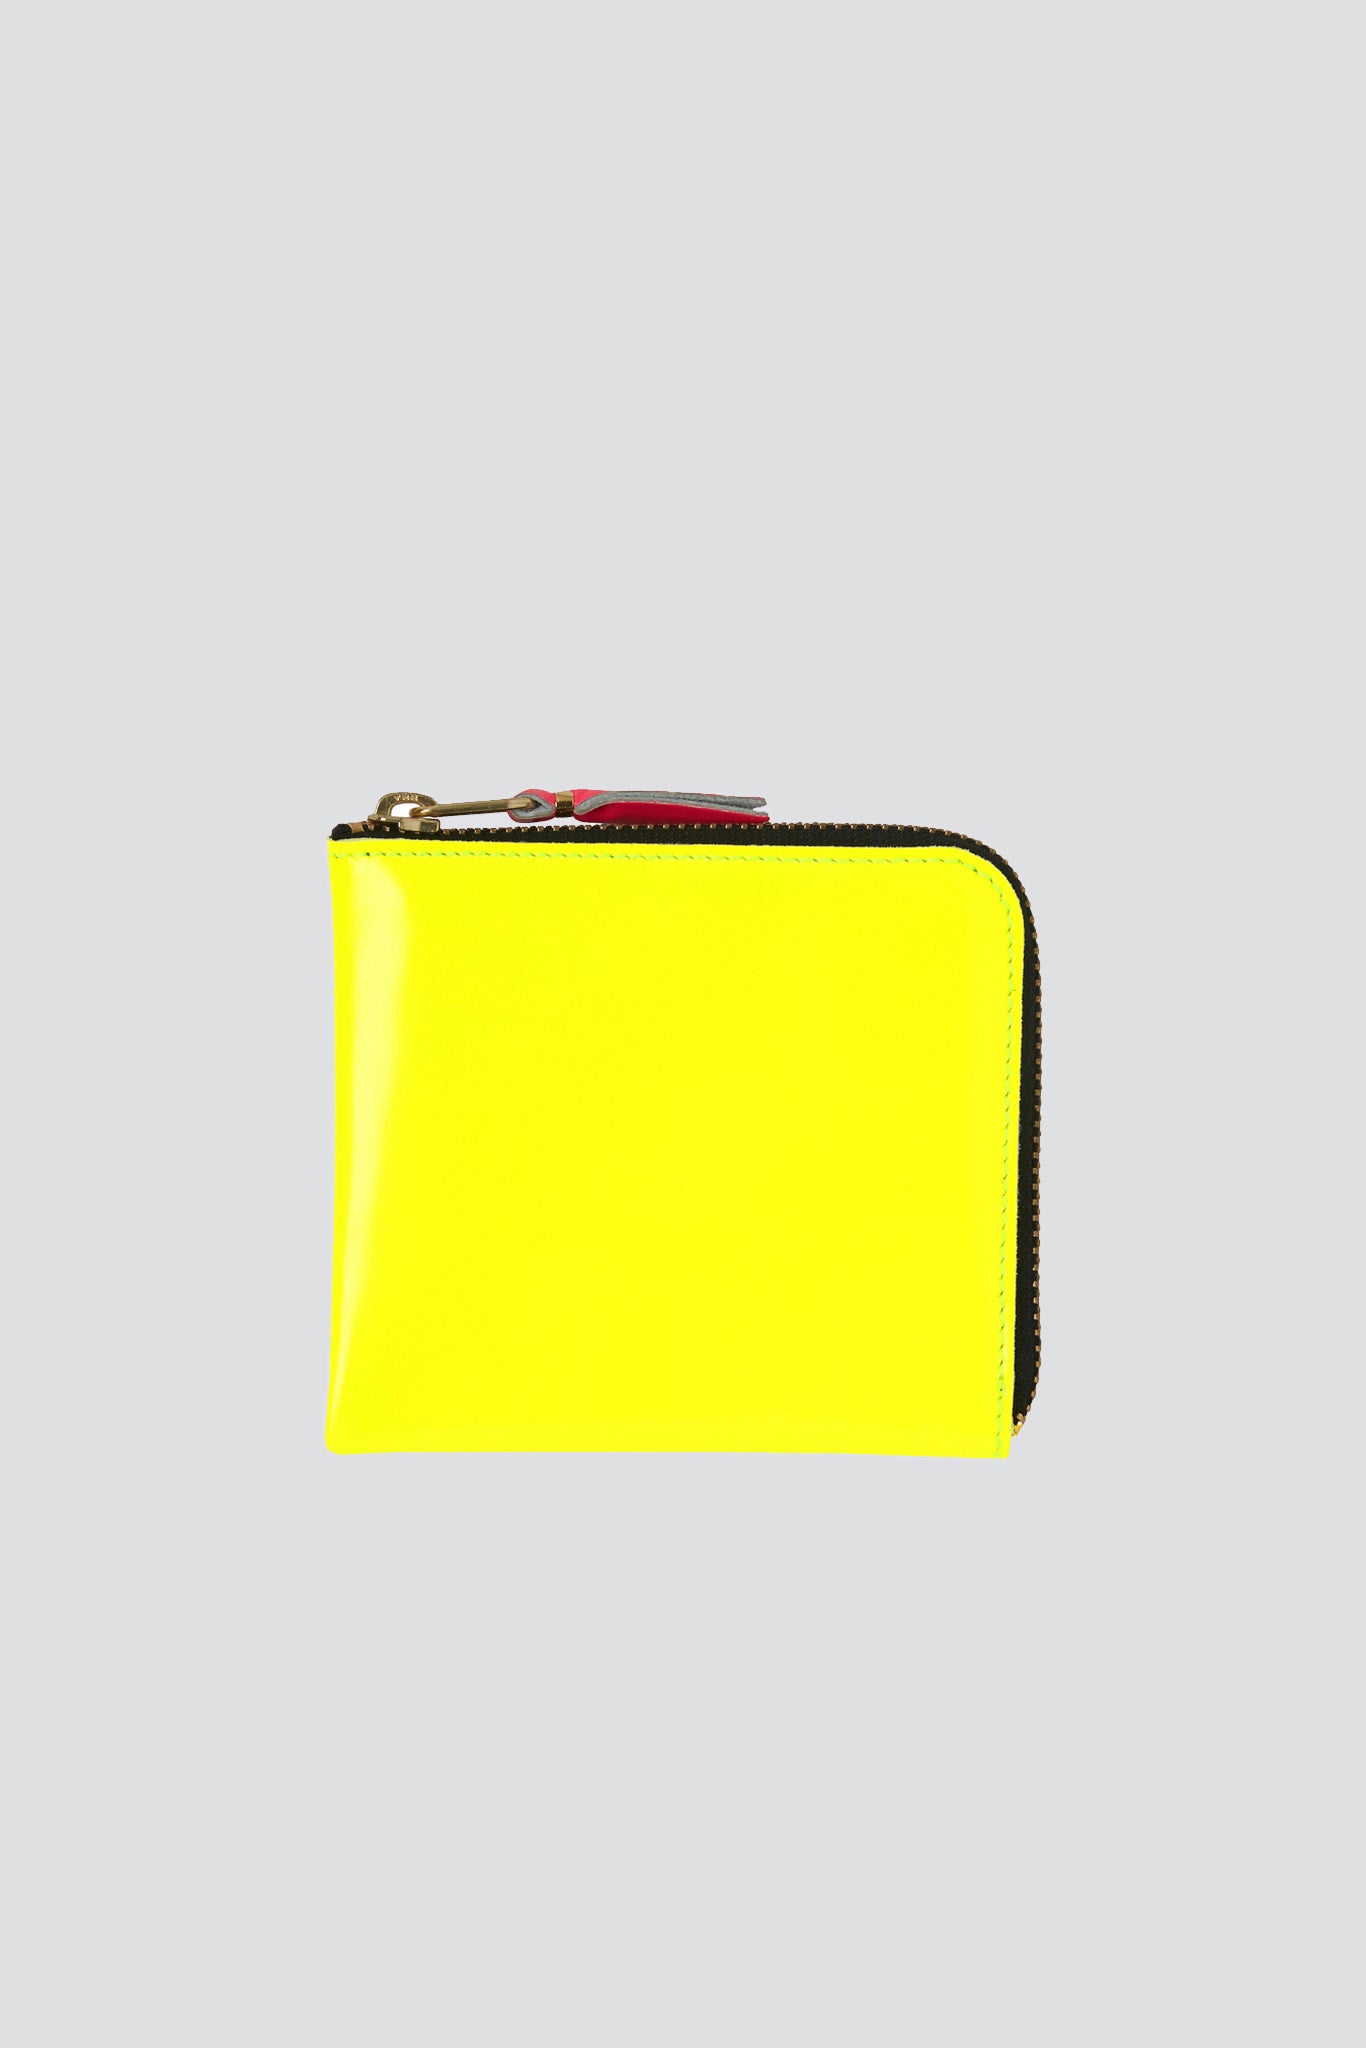 Super Fluo Half Zip Wallet - Yellow/Orange - SA3100SF